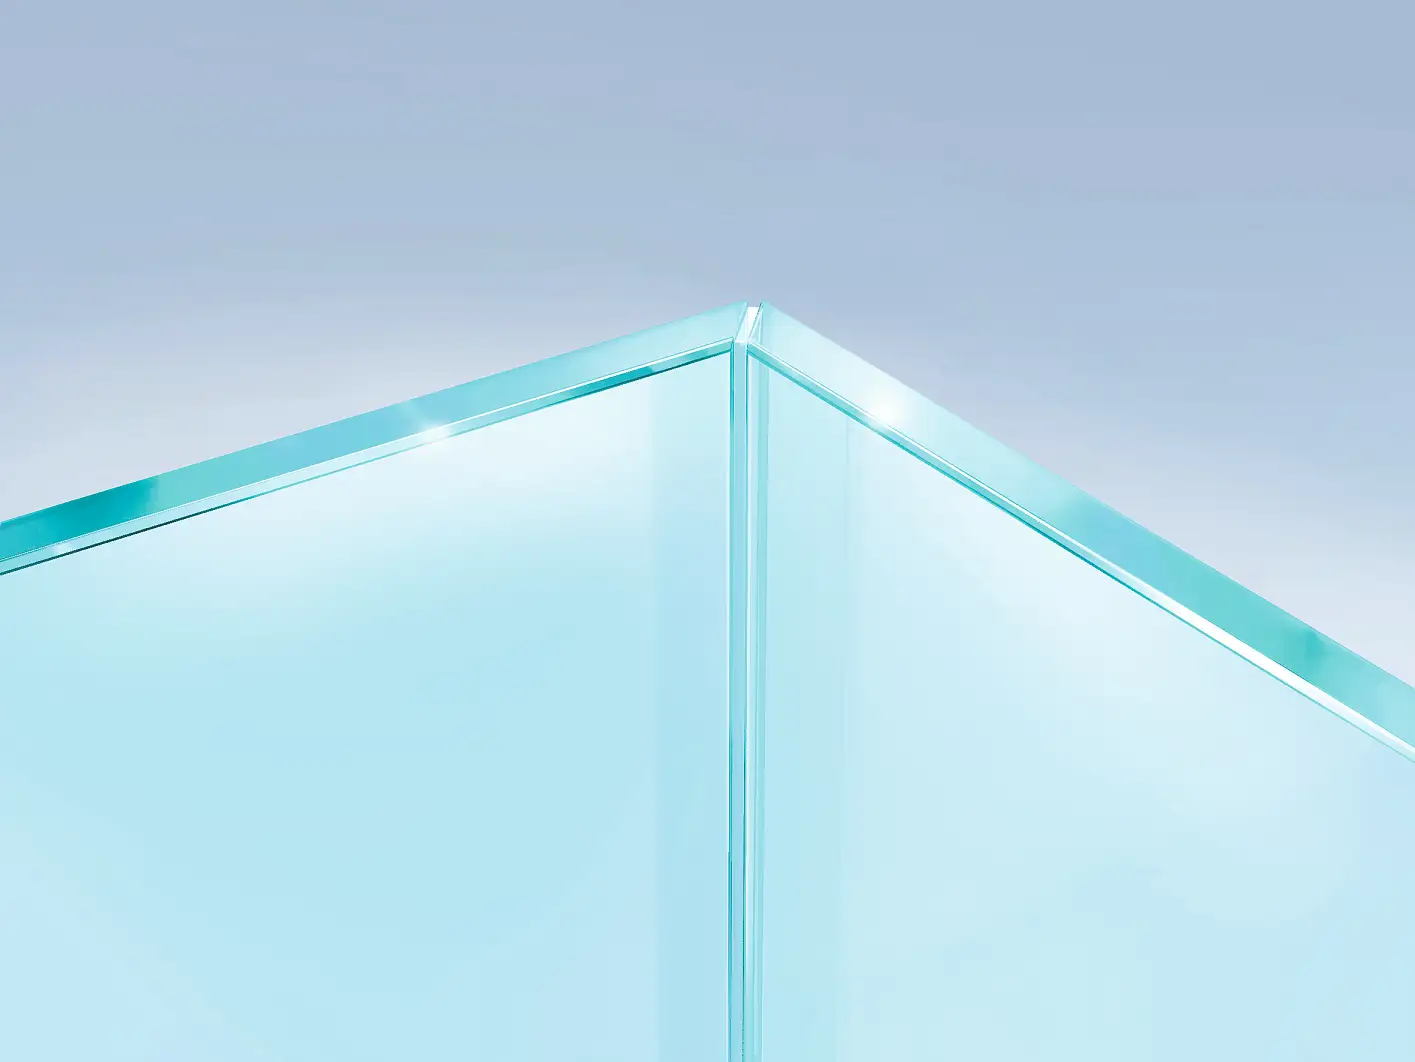 Üvegpanelek ragasztása 45° fokos szöggel annak érdekében, hogy láthatatlan és optikailag tiszta sarkot kapjunk